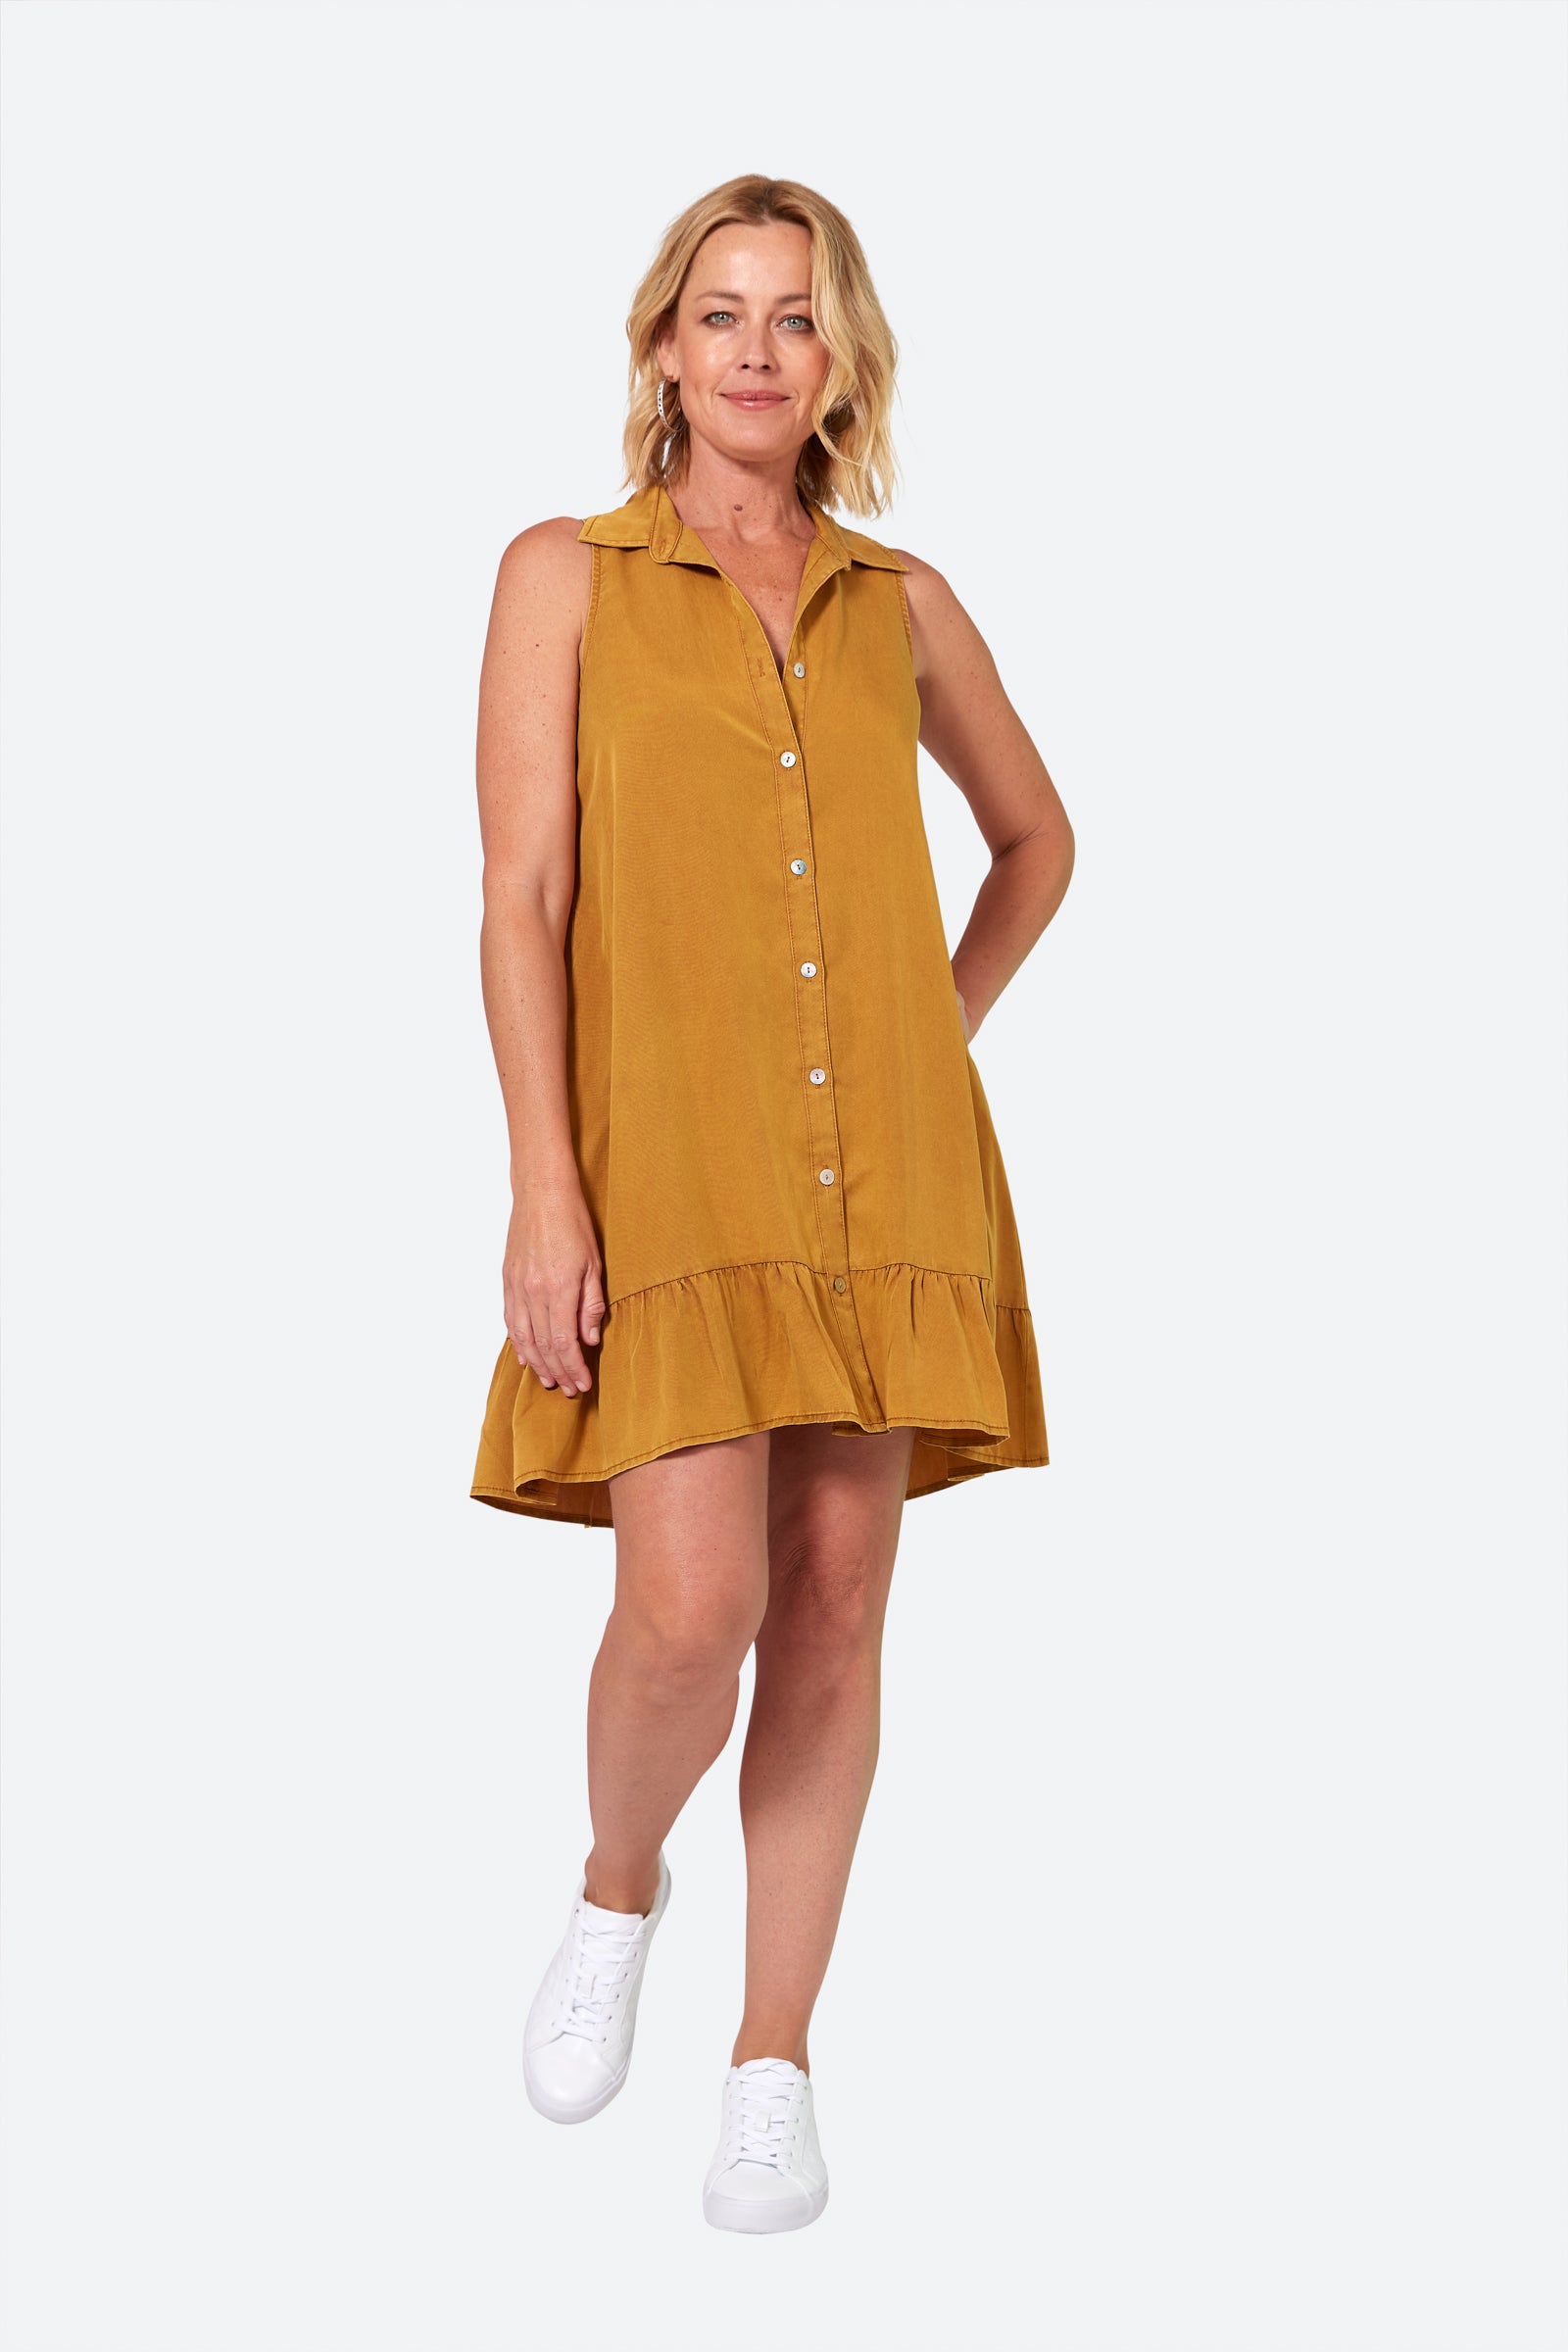 Elan Sleeveless Dress - Honey - eb&ive Clothing - Dress Mid Sleeveless